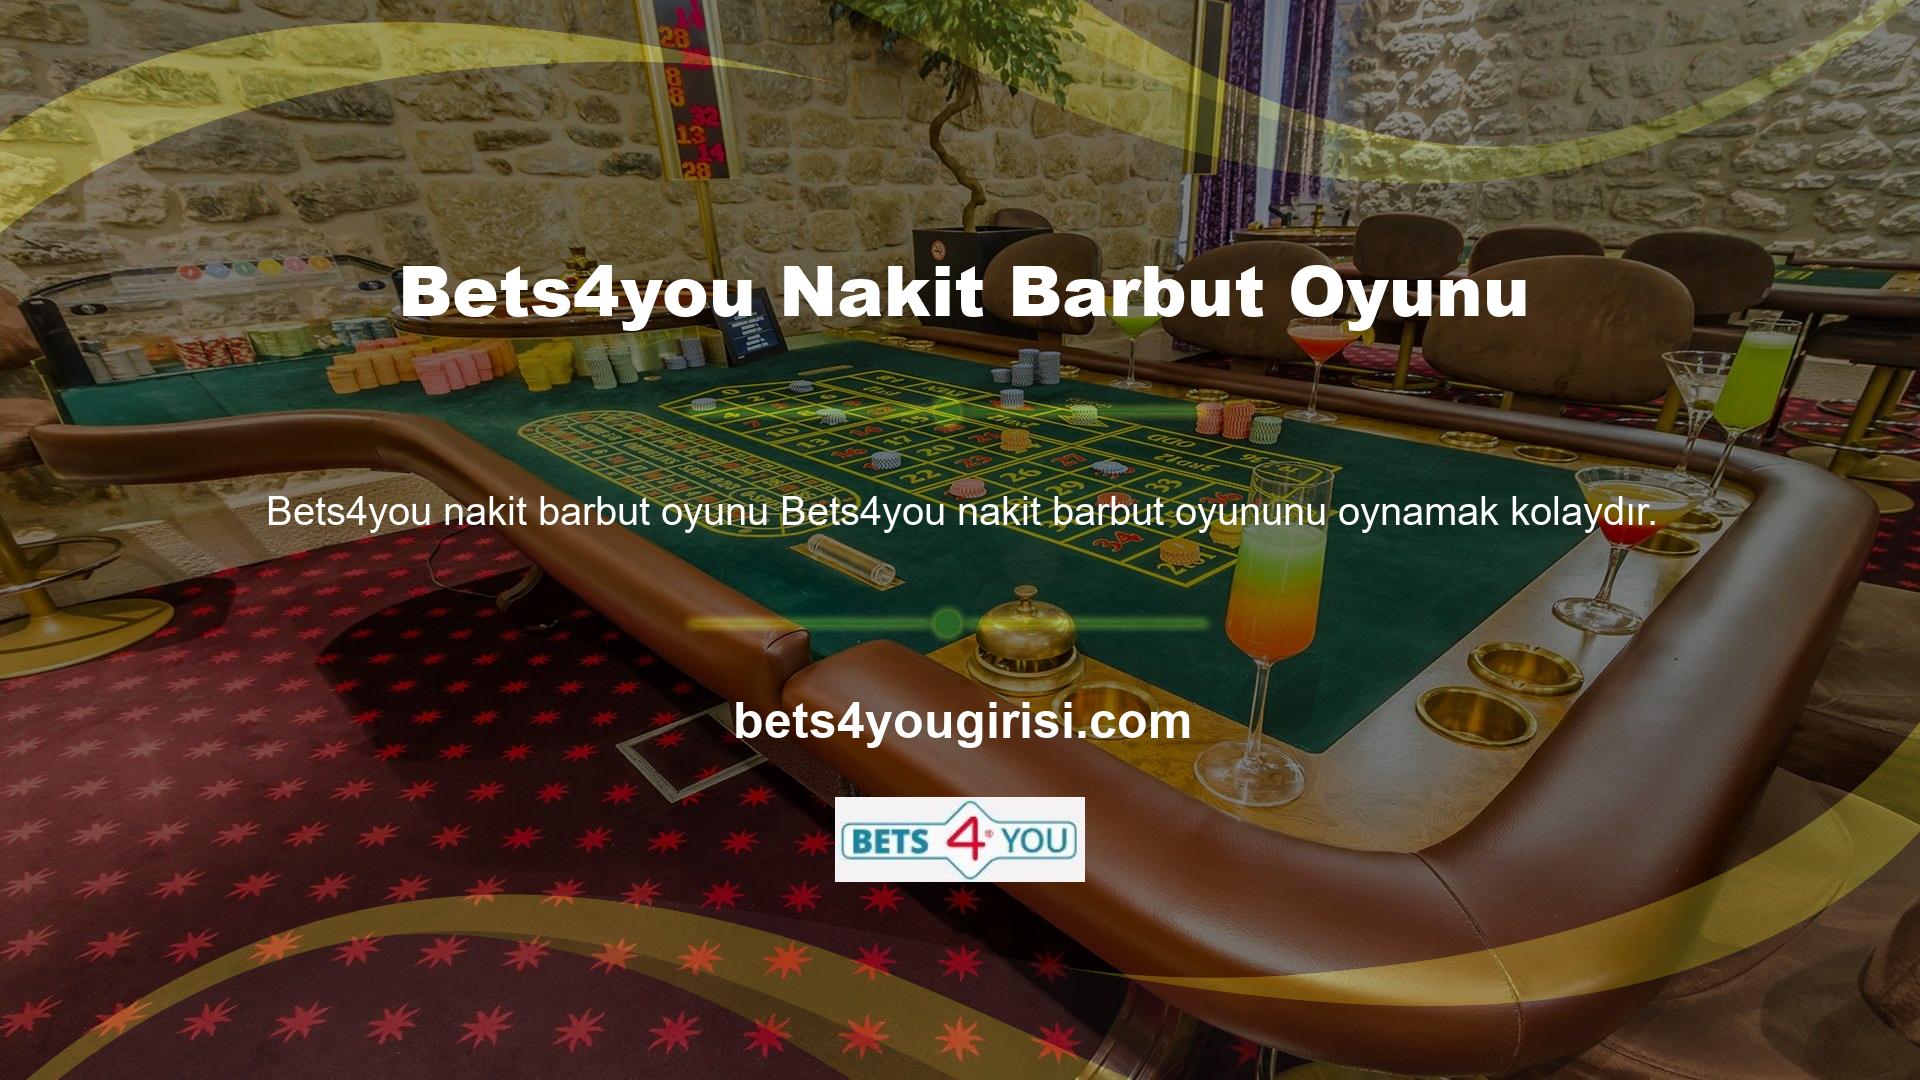 Platform ayrıca oynamayı Bets4you nakit barbut oyunu oyun severler için tanıtım videoları da sunuyor